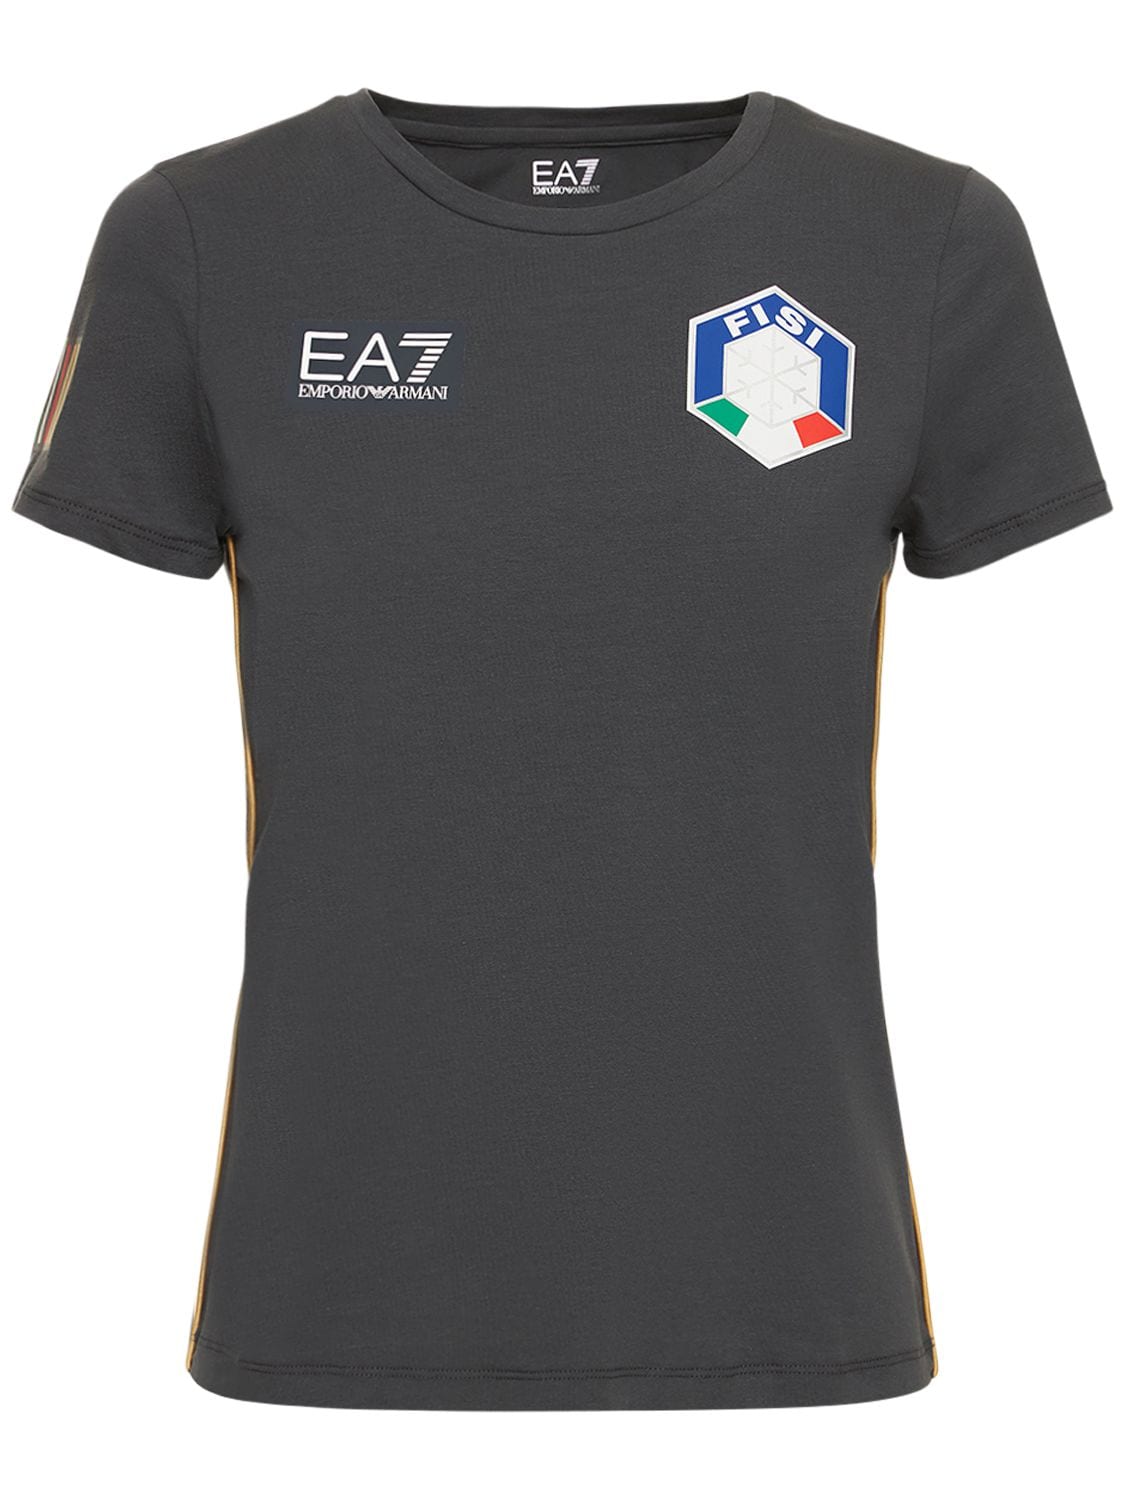 T-shirt En Jersey De Coton Stretch Fisi - EA7 EMPORIO ARMANI - Modalova